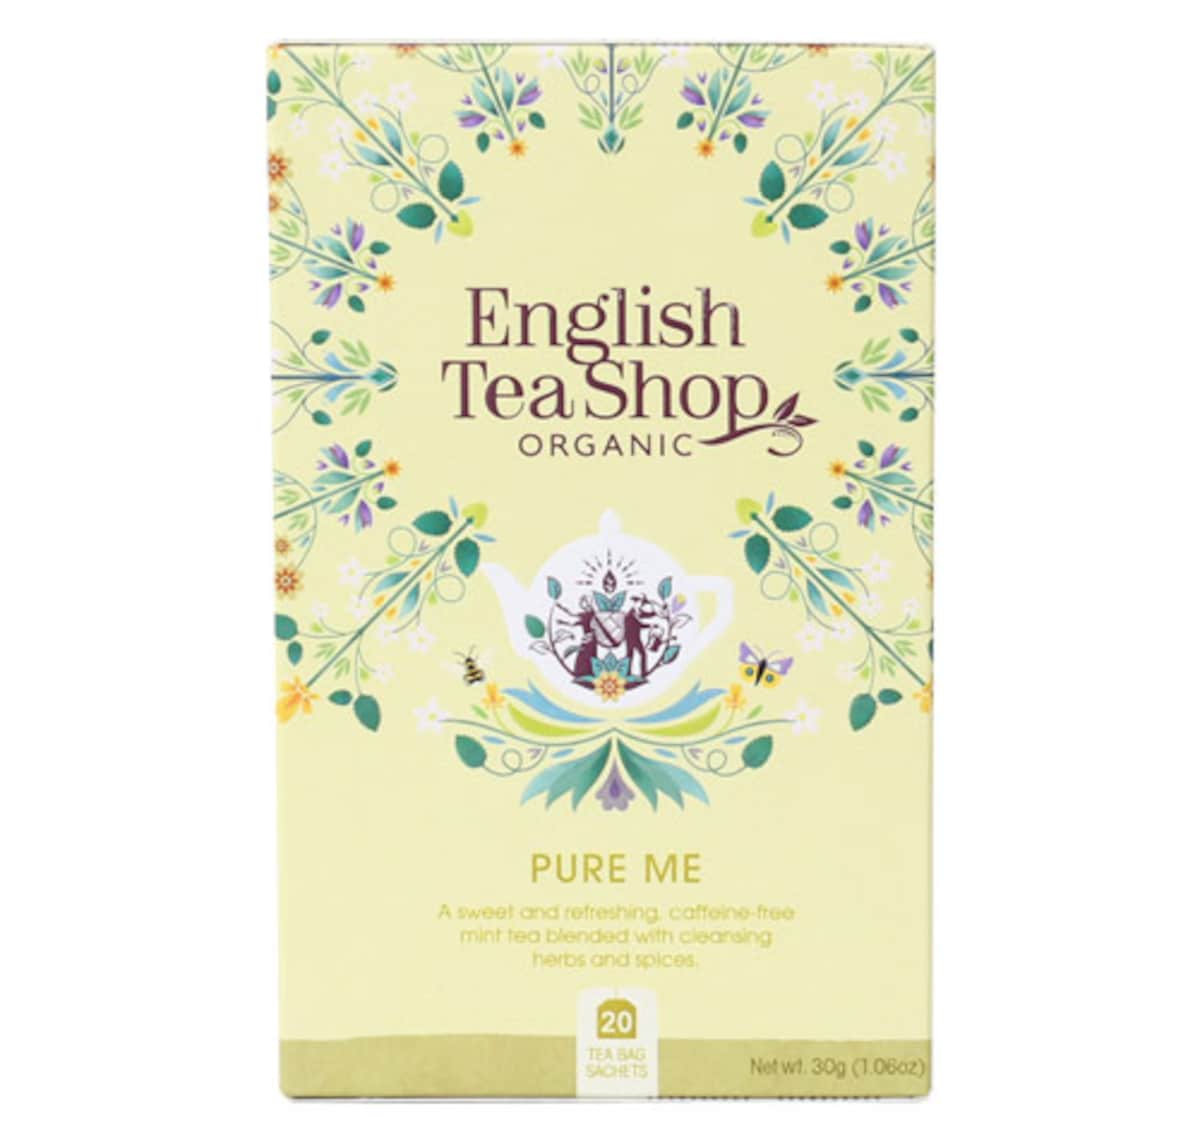 English Tea Shop Organic Wellness Tea Pure Me 20 Tea Bags